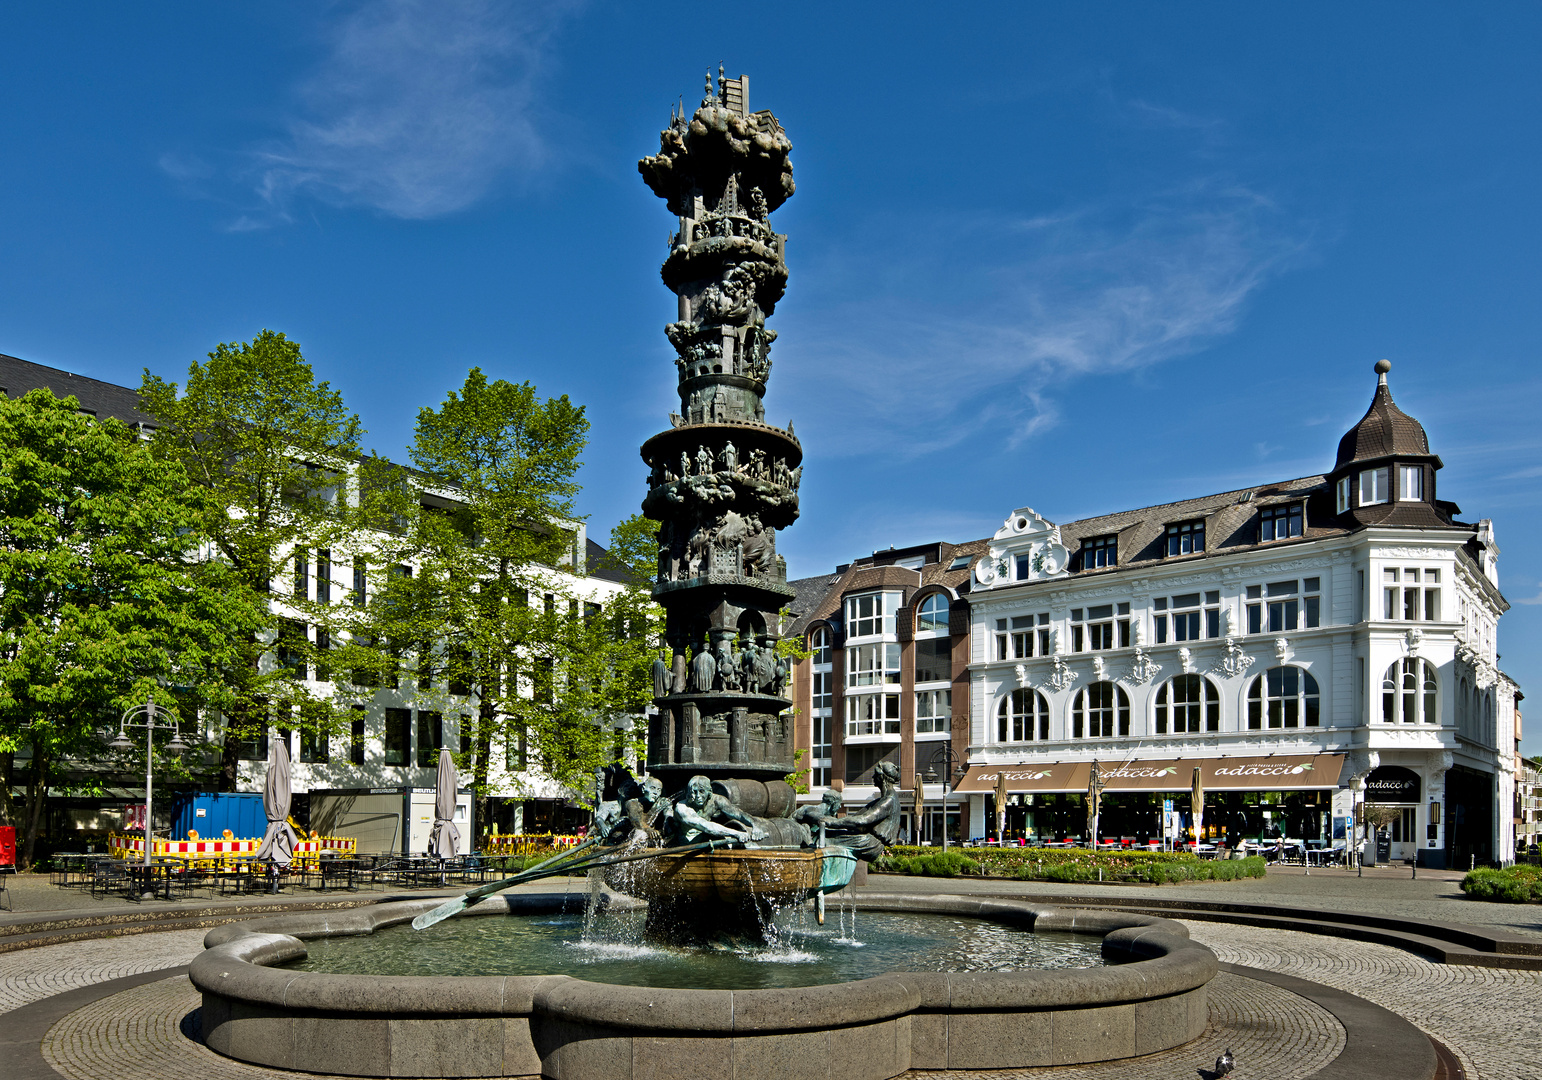 Historienbrunnen, Koblenz